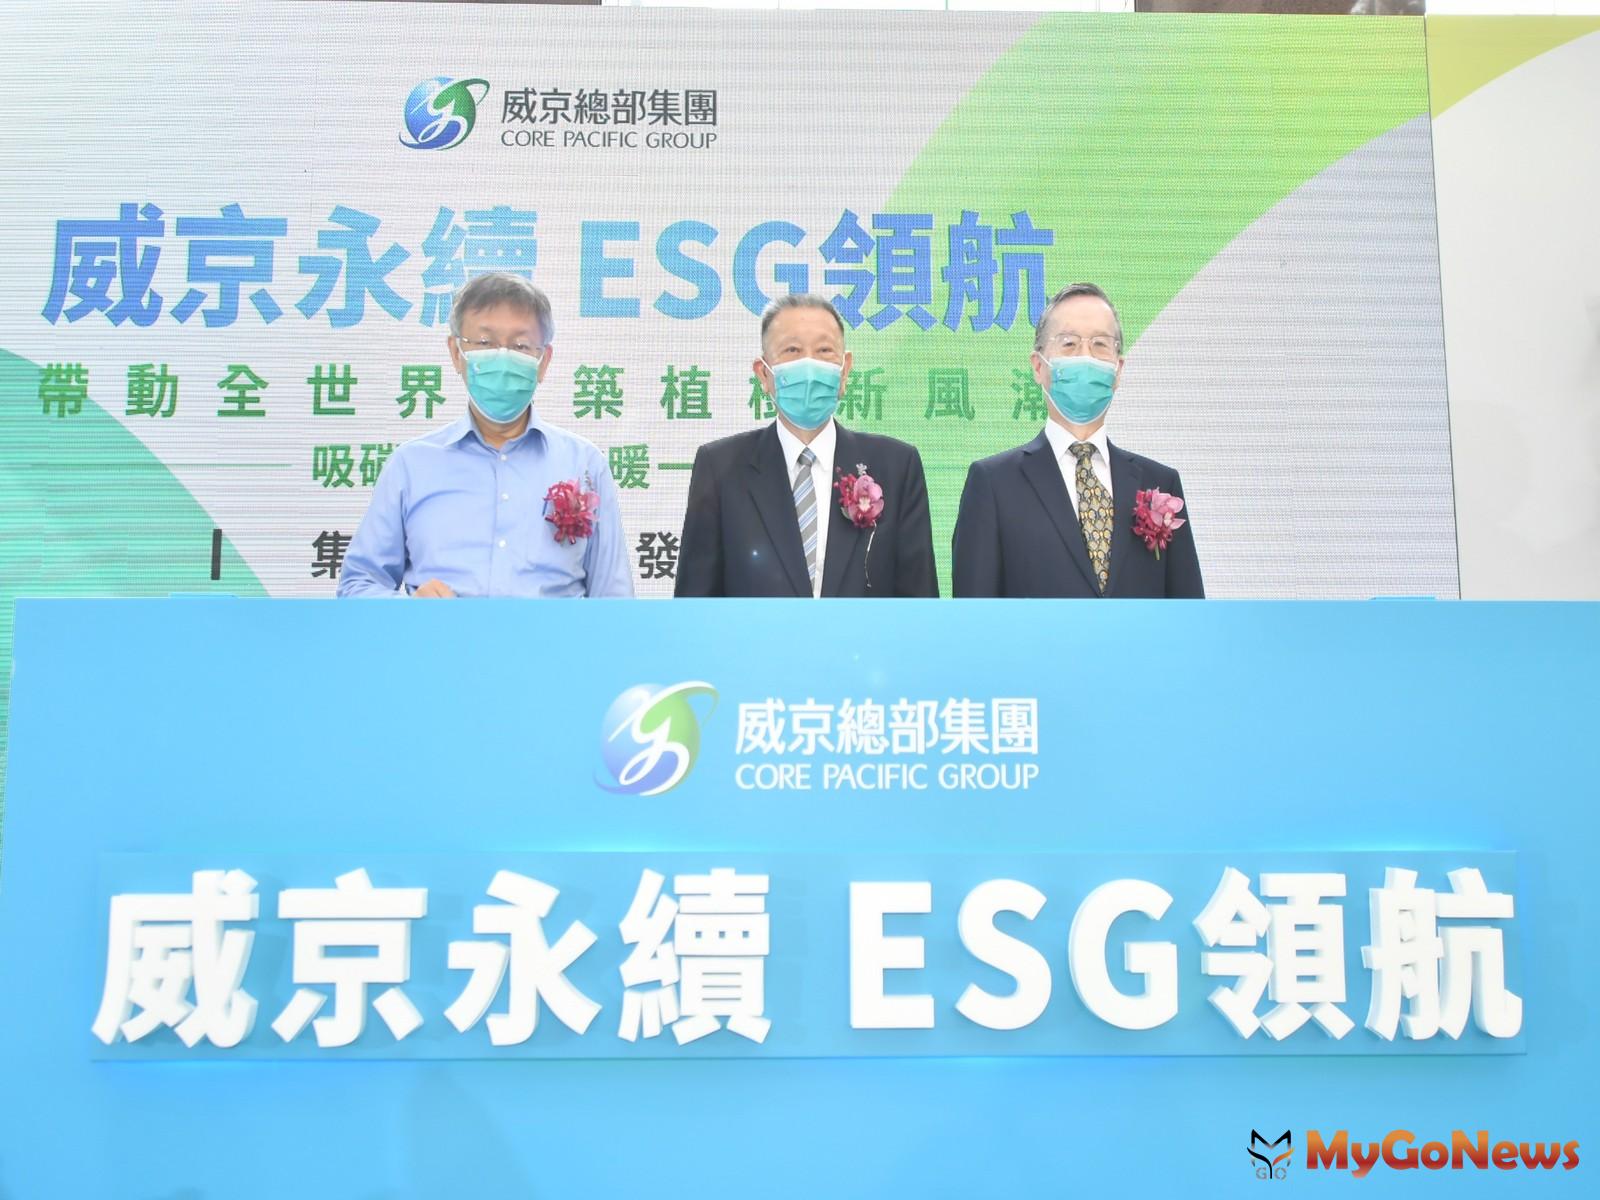 威京總部集團全新企業識別系統與ESG理念發表會